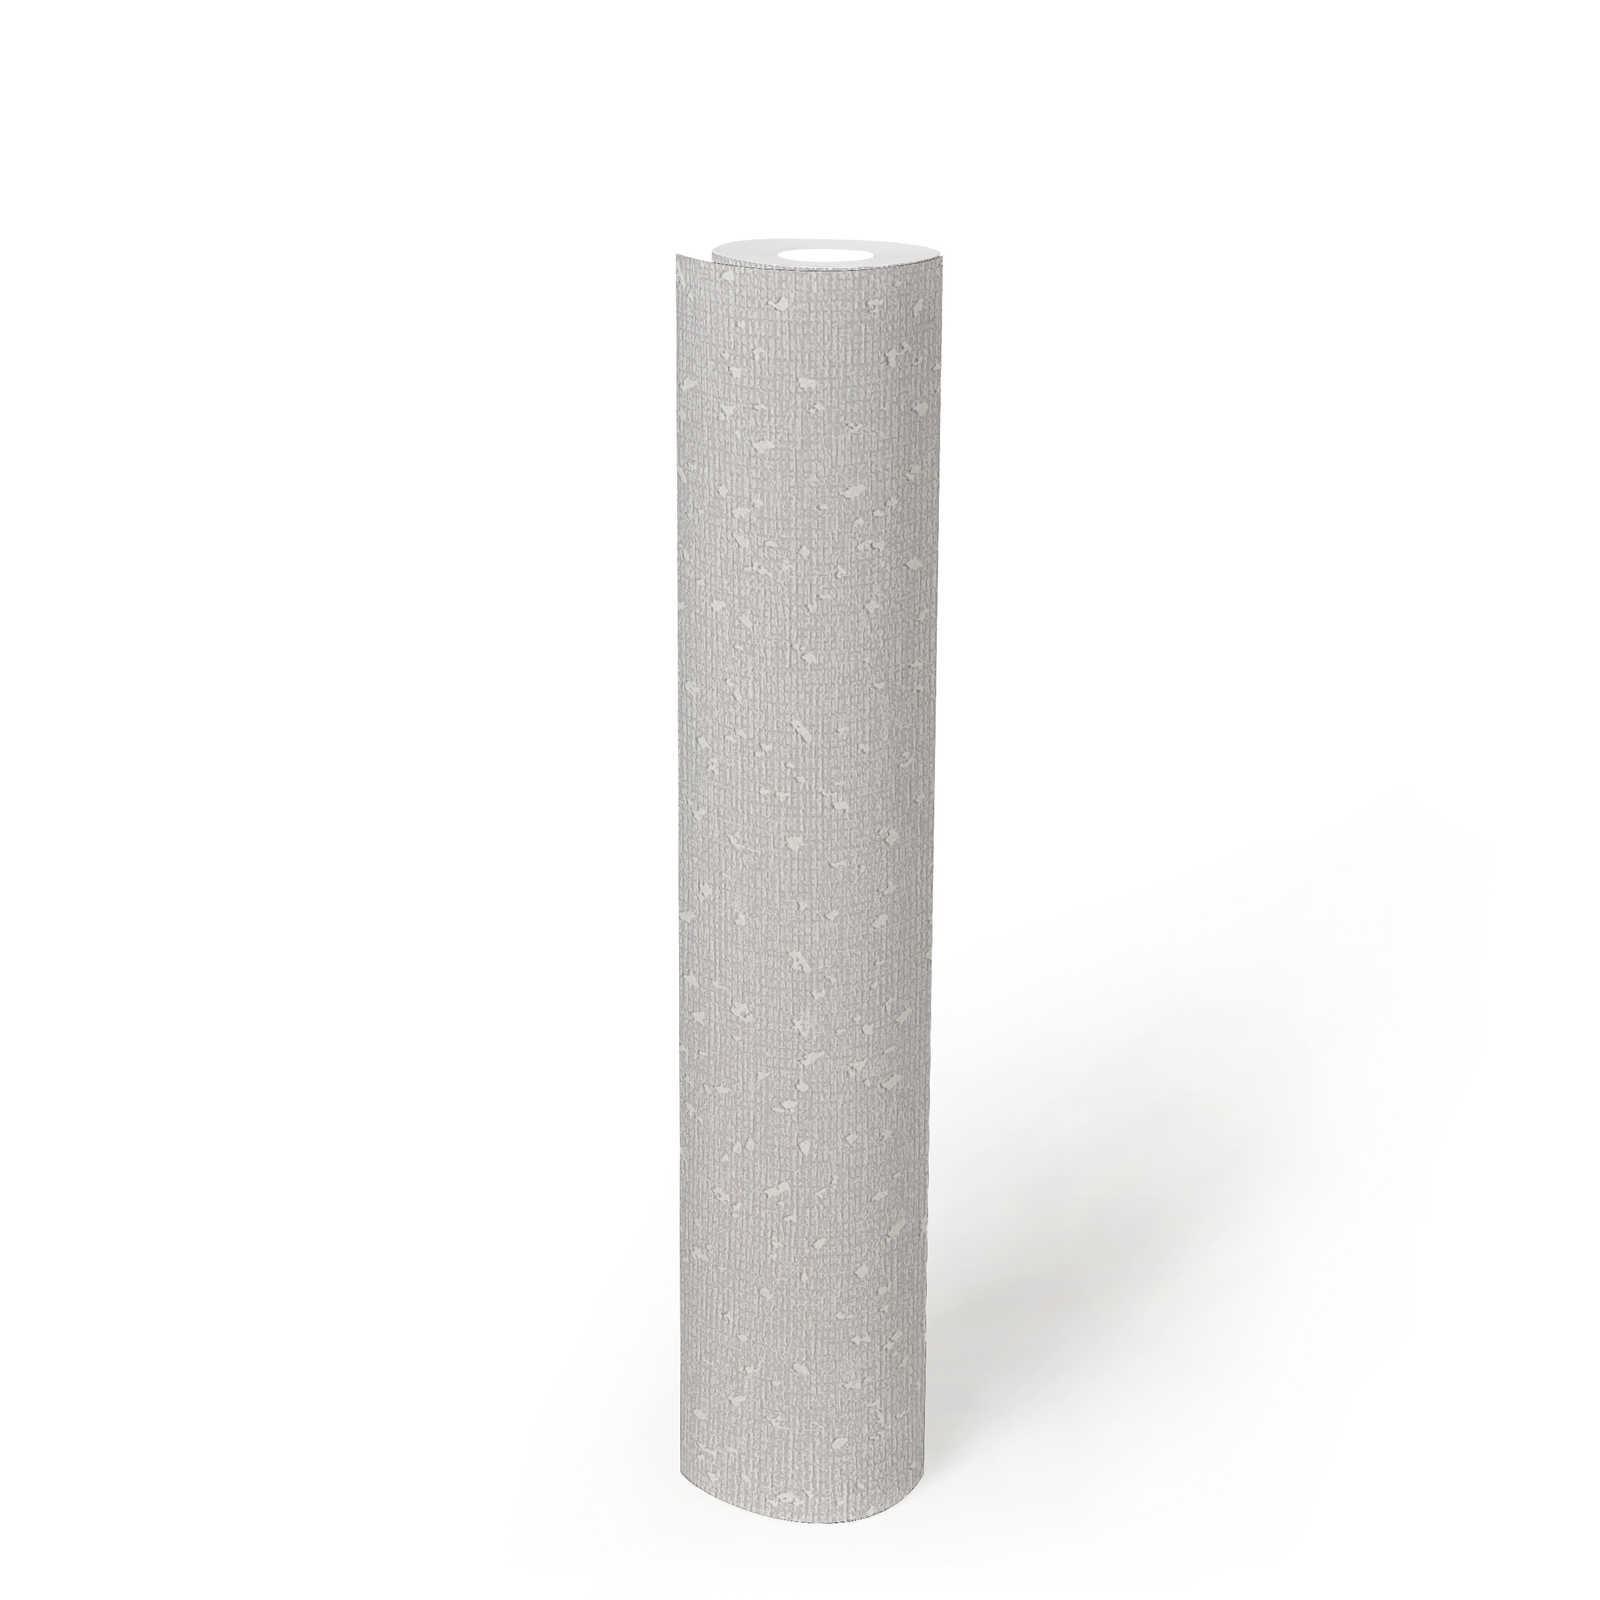             Papel pintado con estructura textil y acento metálico - blanco, gris
        